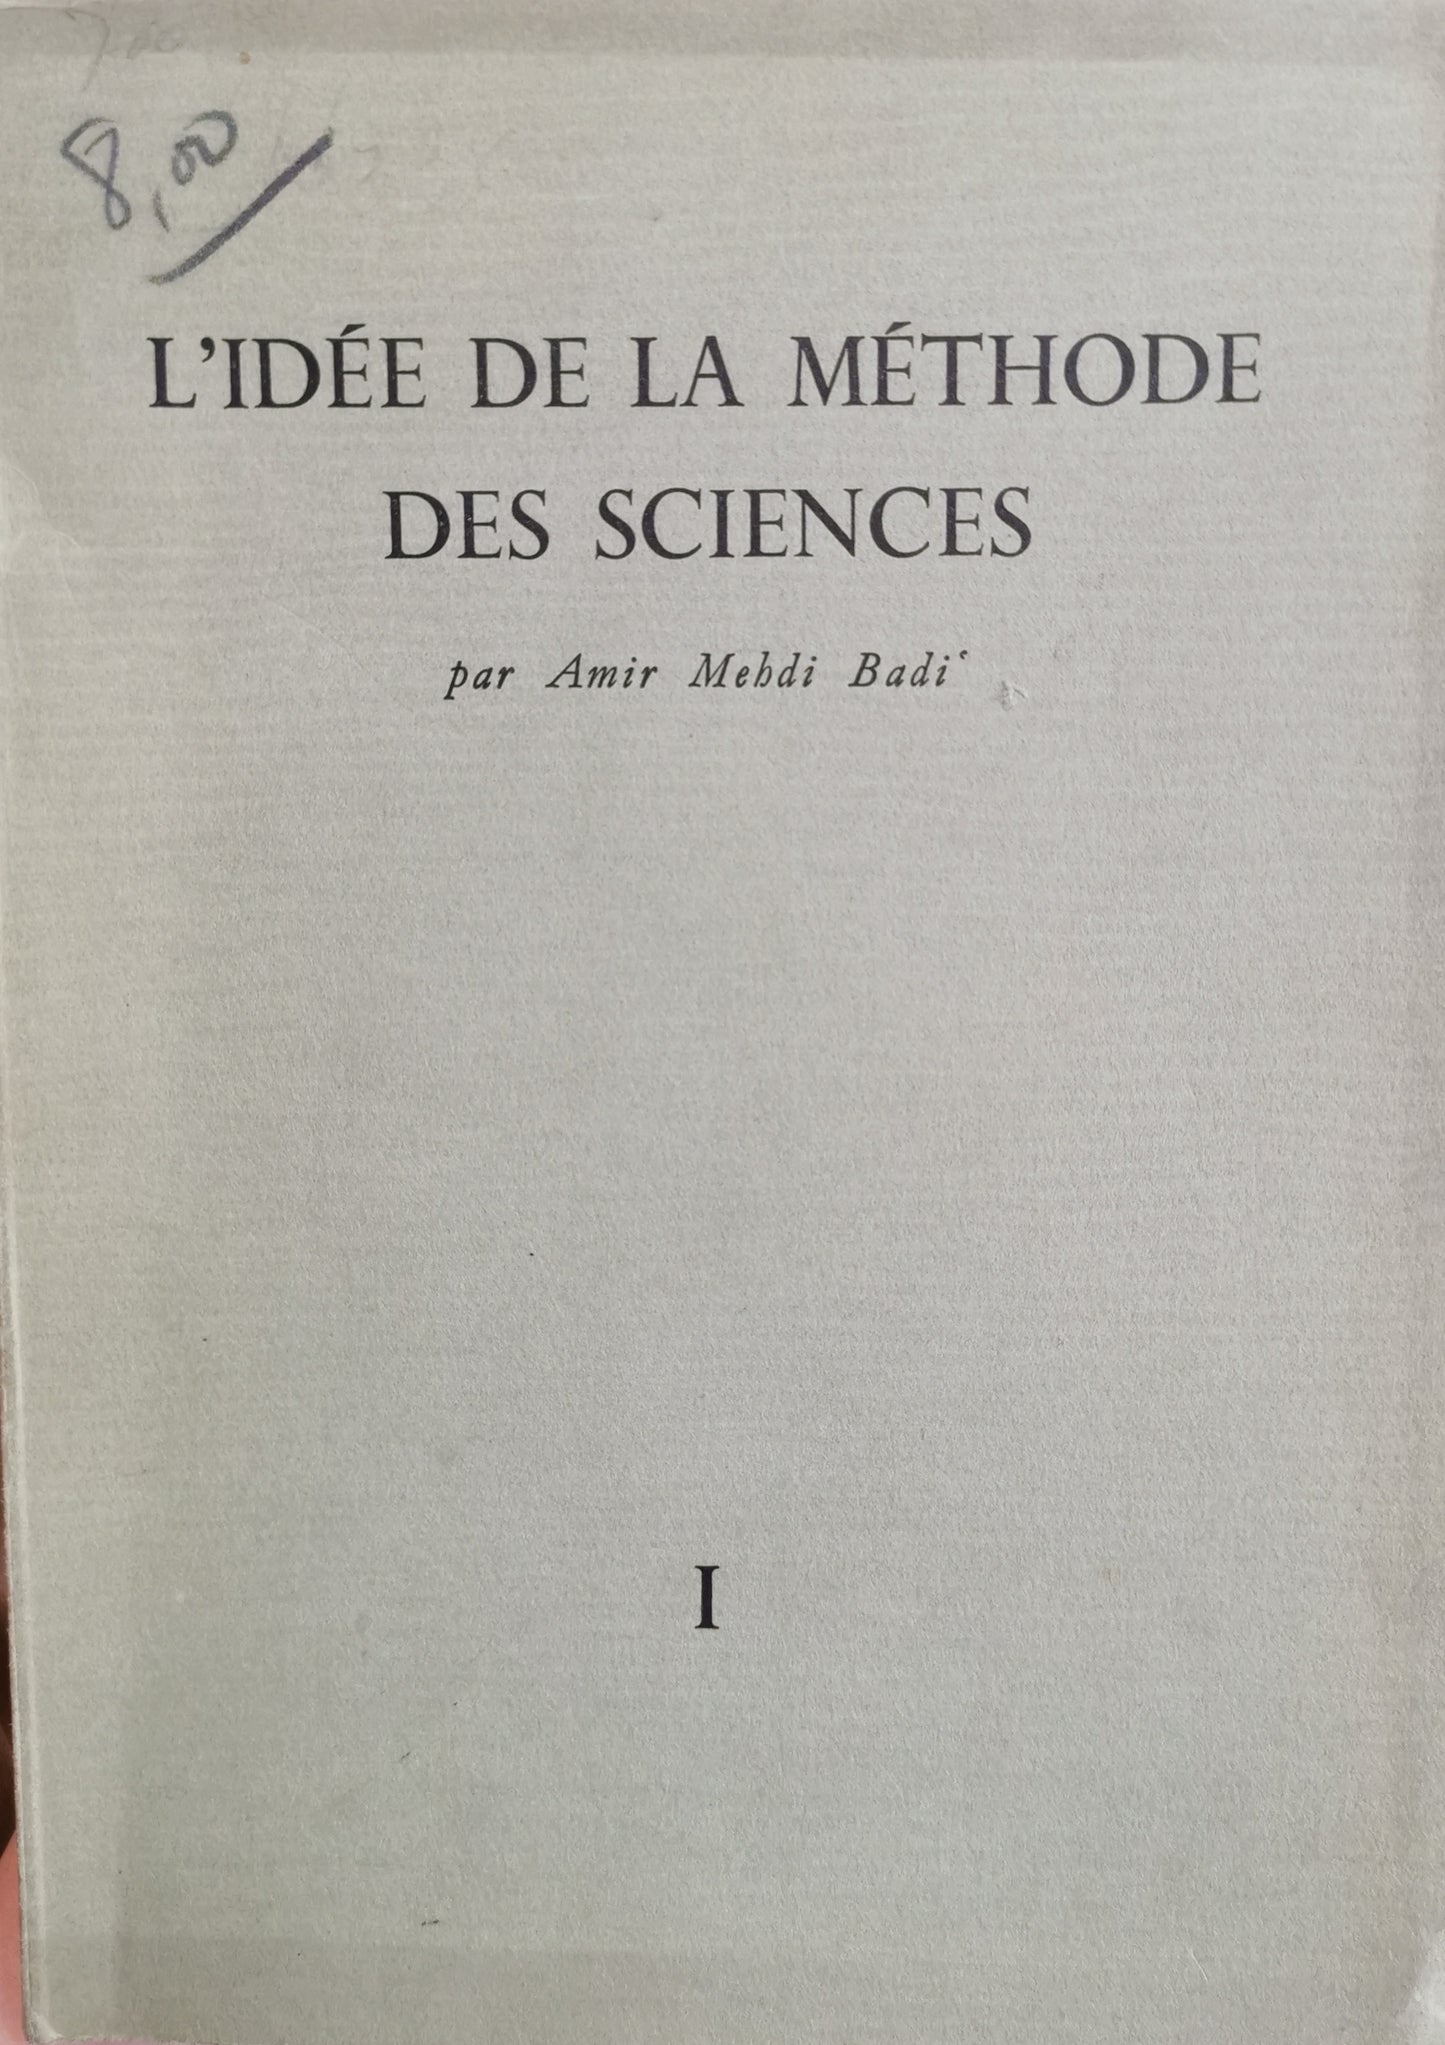 L'idée de la méthode des sciences, Ami Mehdi Badi, Librairie Payot, 1953.